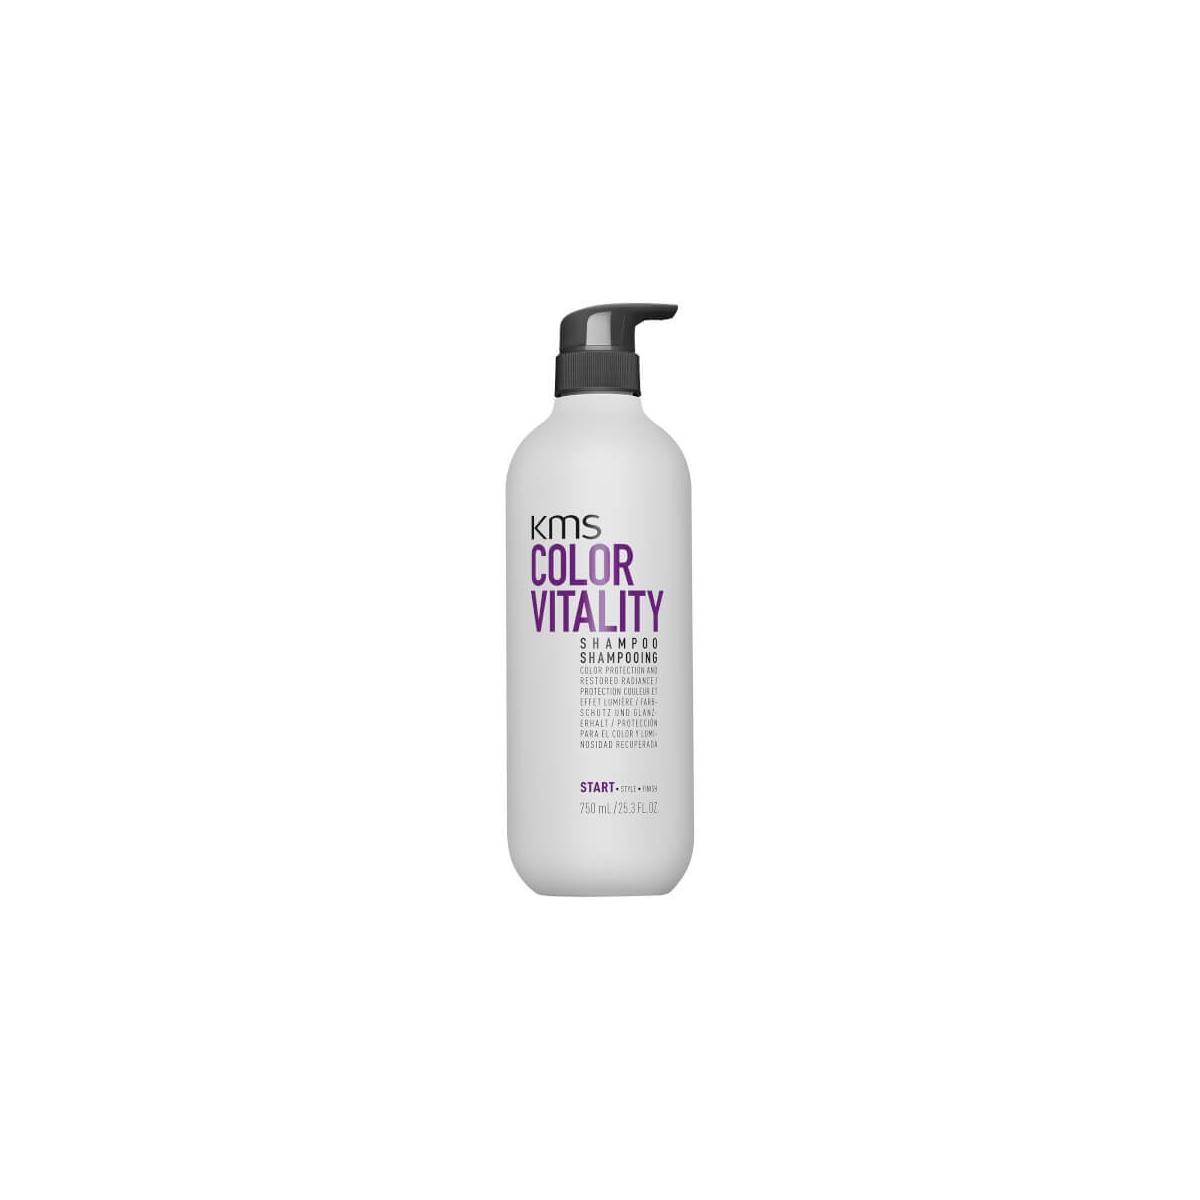 KMS CALIFORNIA - COLORVITALITY - SHAMPOO (750ml) Shampoo per capelli colorati